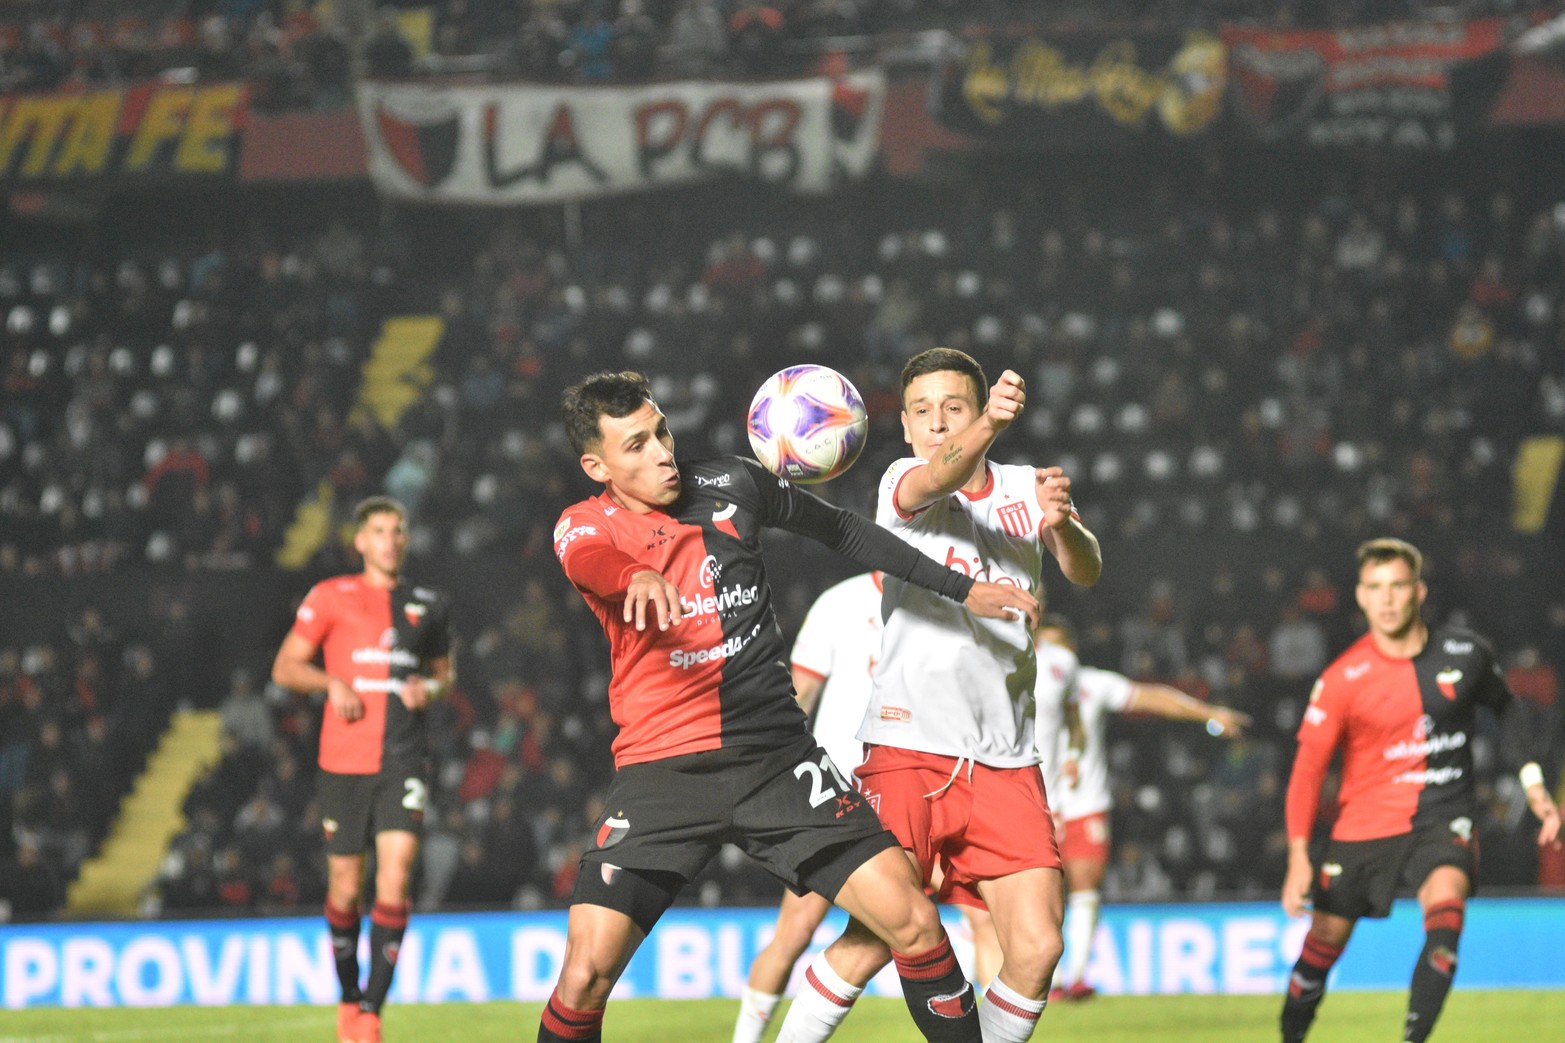 Colón le cortó el invicto a Estudiantes. Ganó 1 a 0, con gol de Garcé.
Foto: Manuel Fabatía